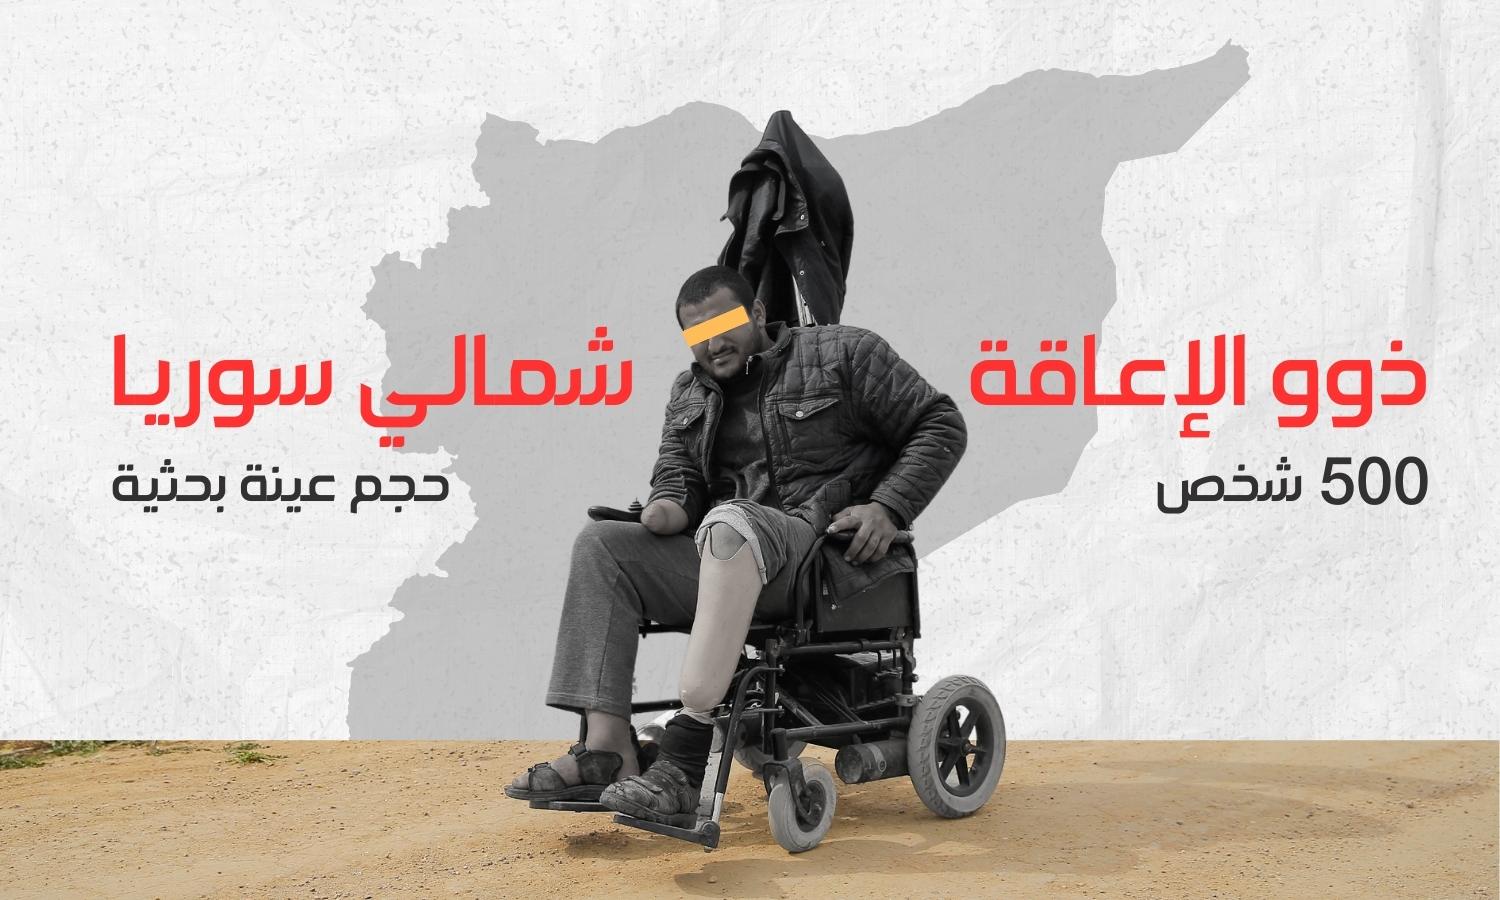 ذوو الإعاقة شمالي سوريا